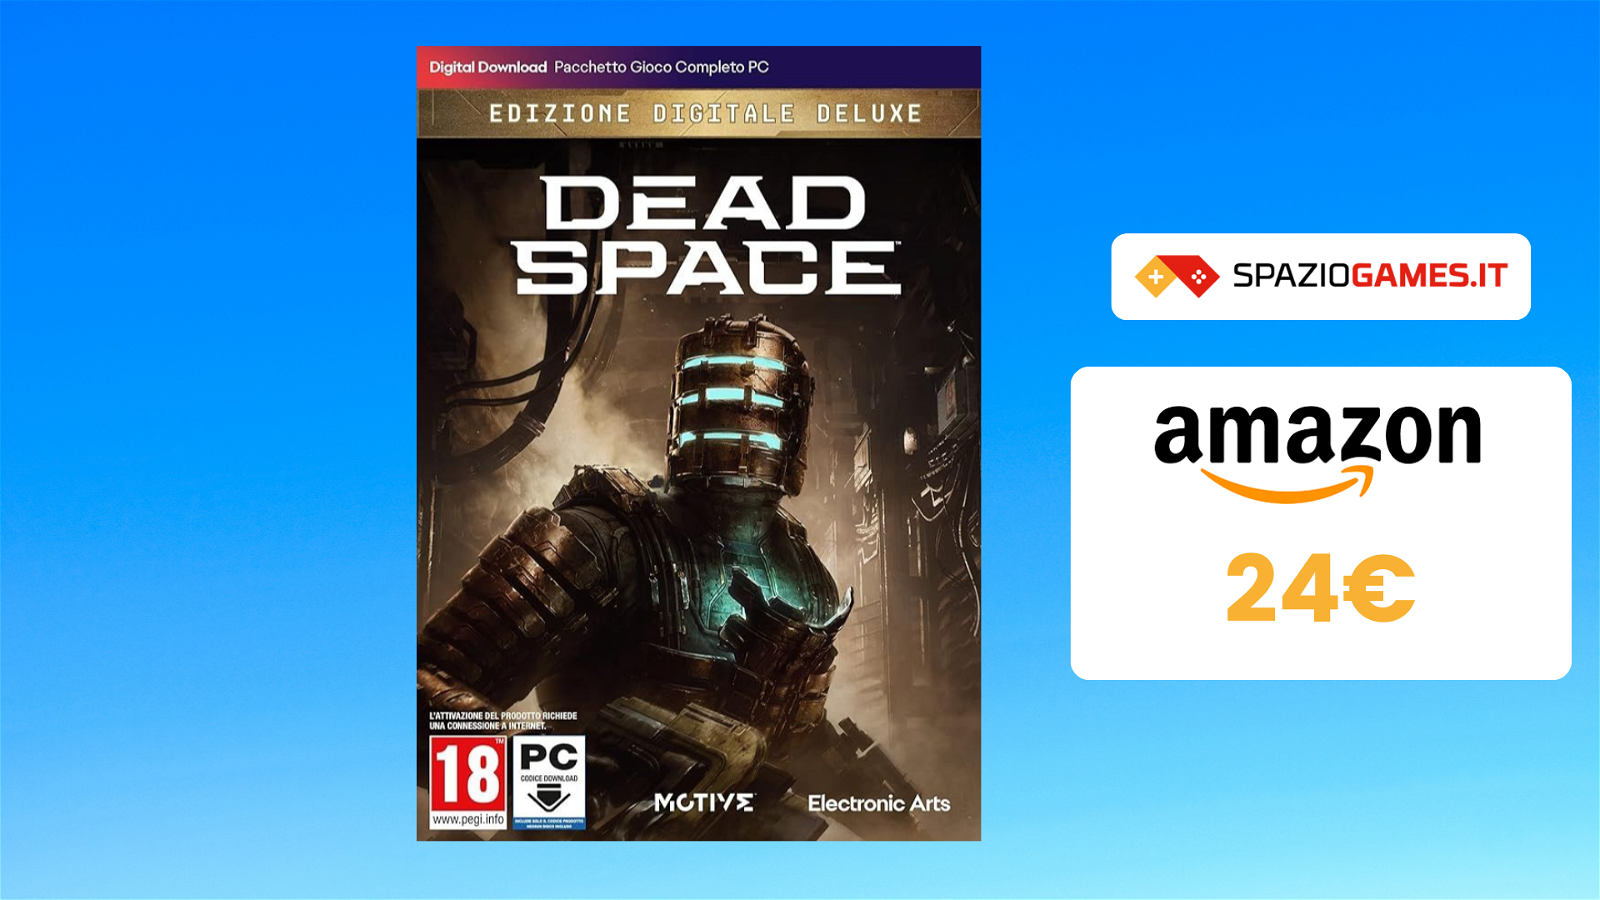 Dead Space: l'edizione digitale deluxe per PC a soli 24€!